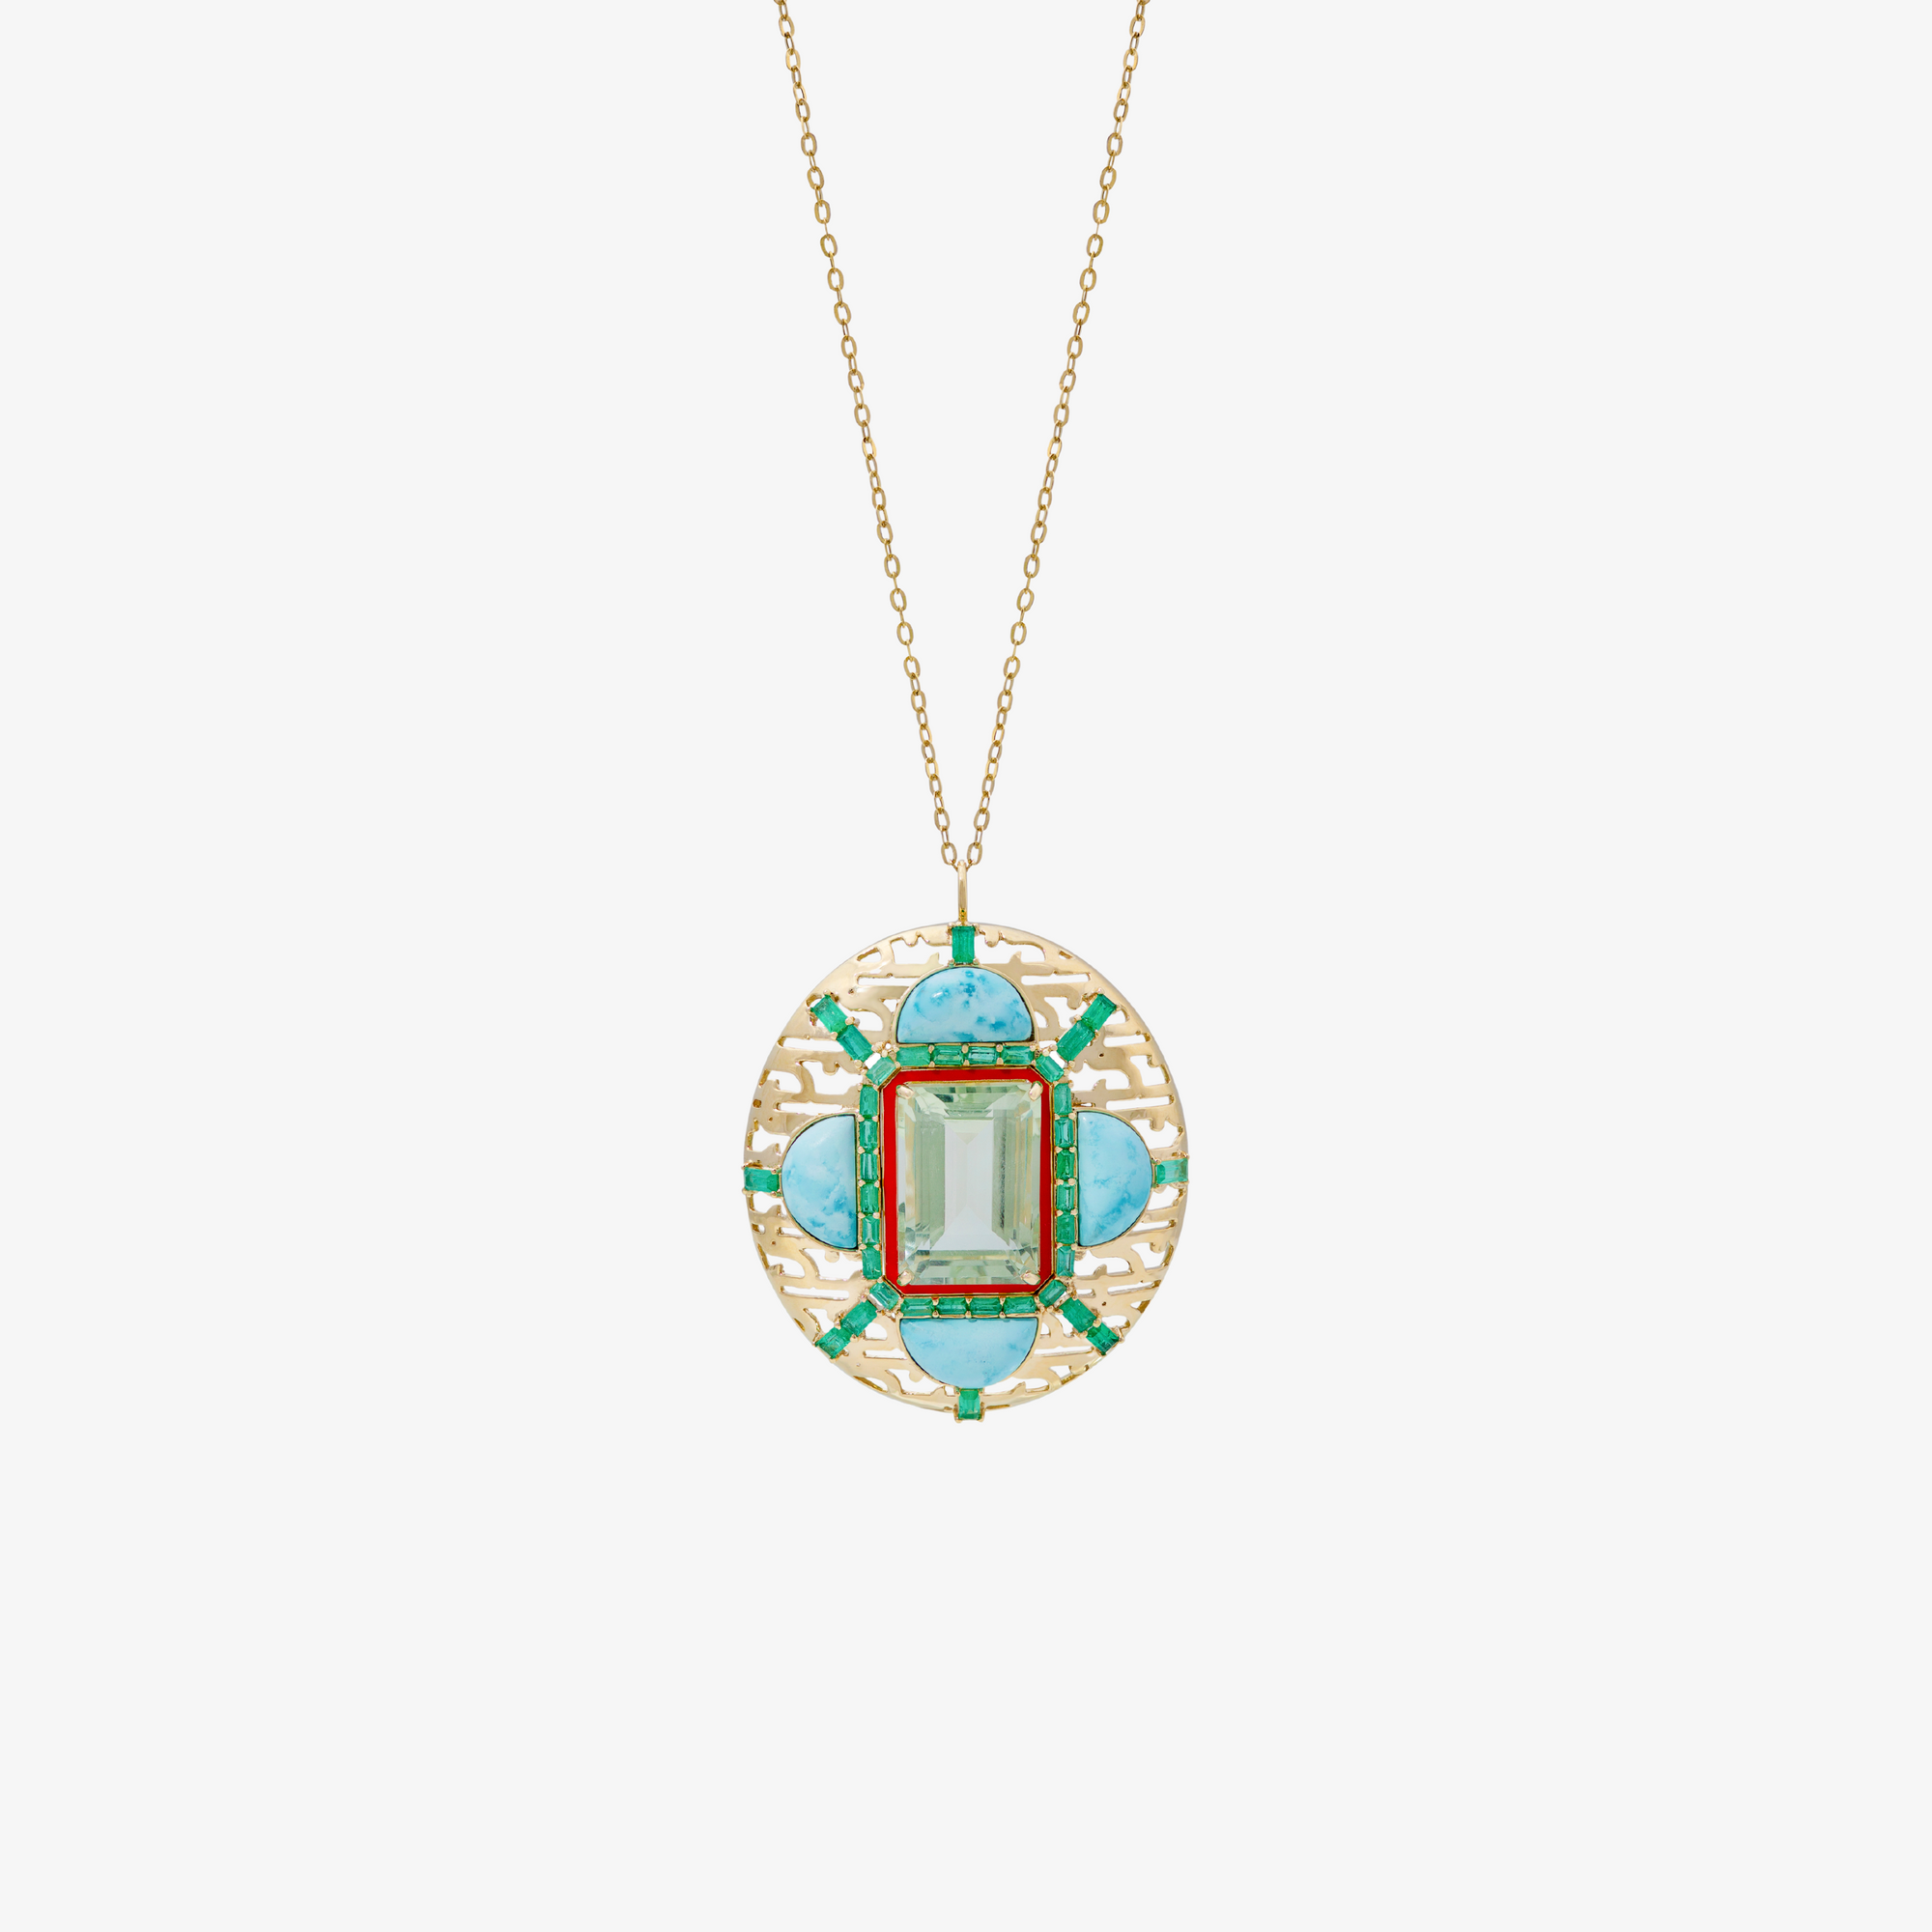 HAWA - Gold, Emerald, Tourmaline & Turquoise Pendant